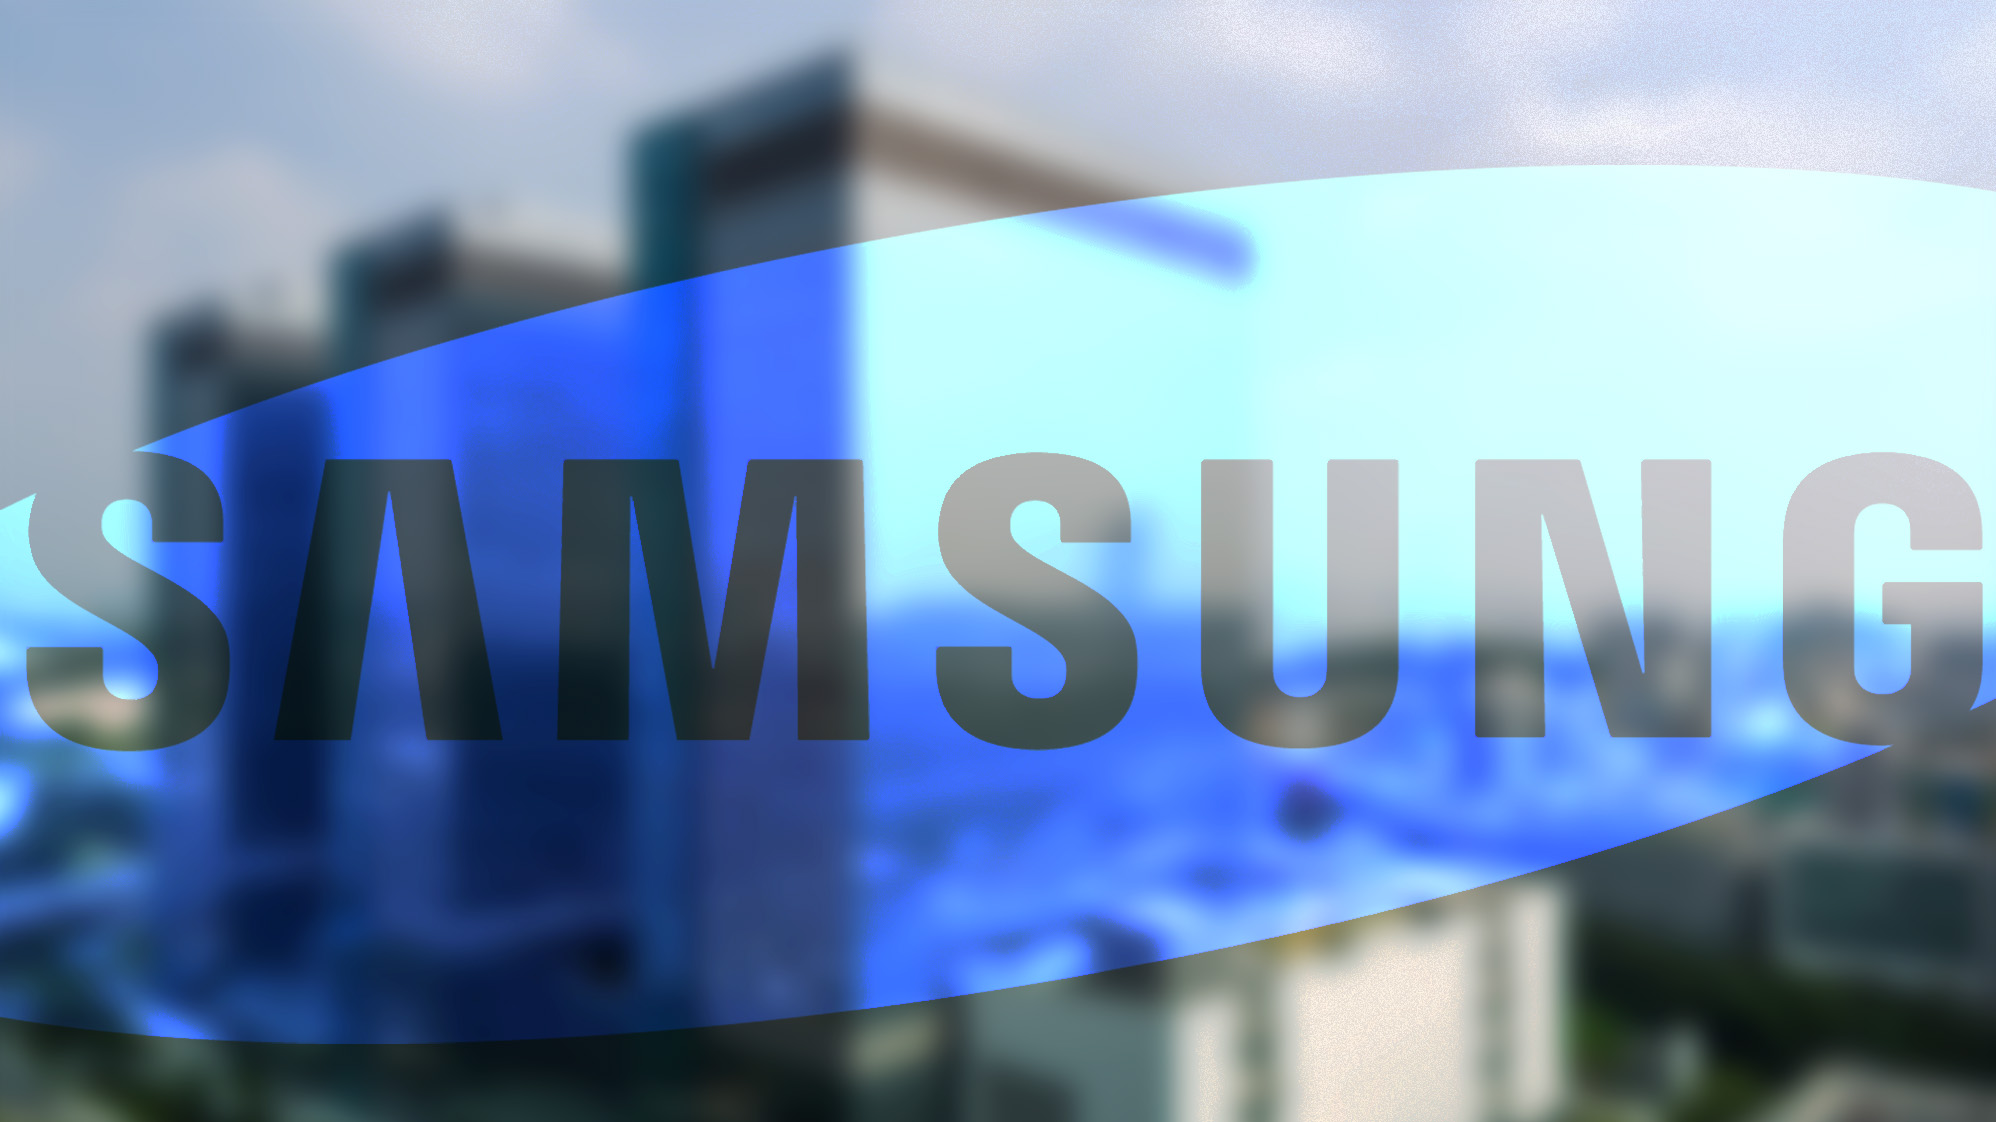 Samsung удваивает потребление солнечной энергии в поисках экологически чистых технологий